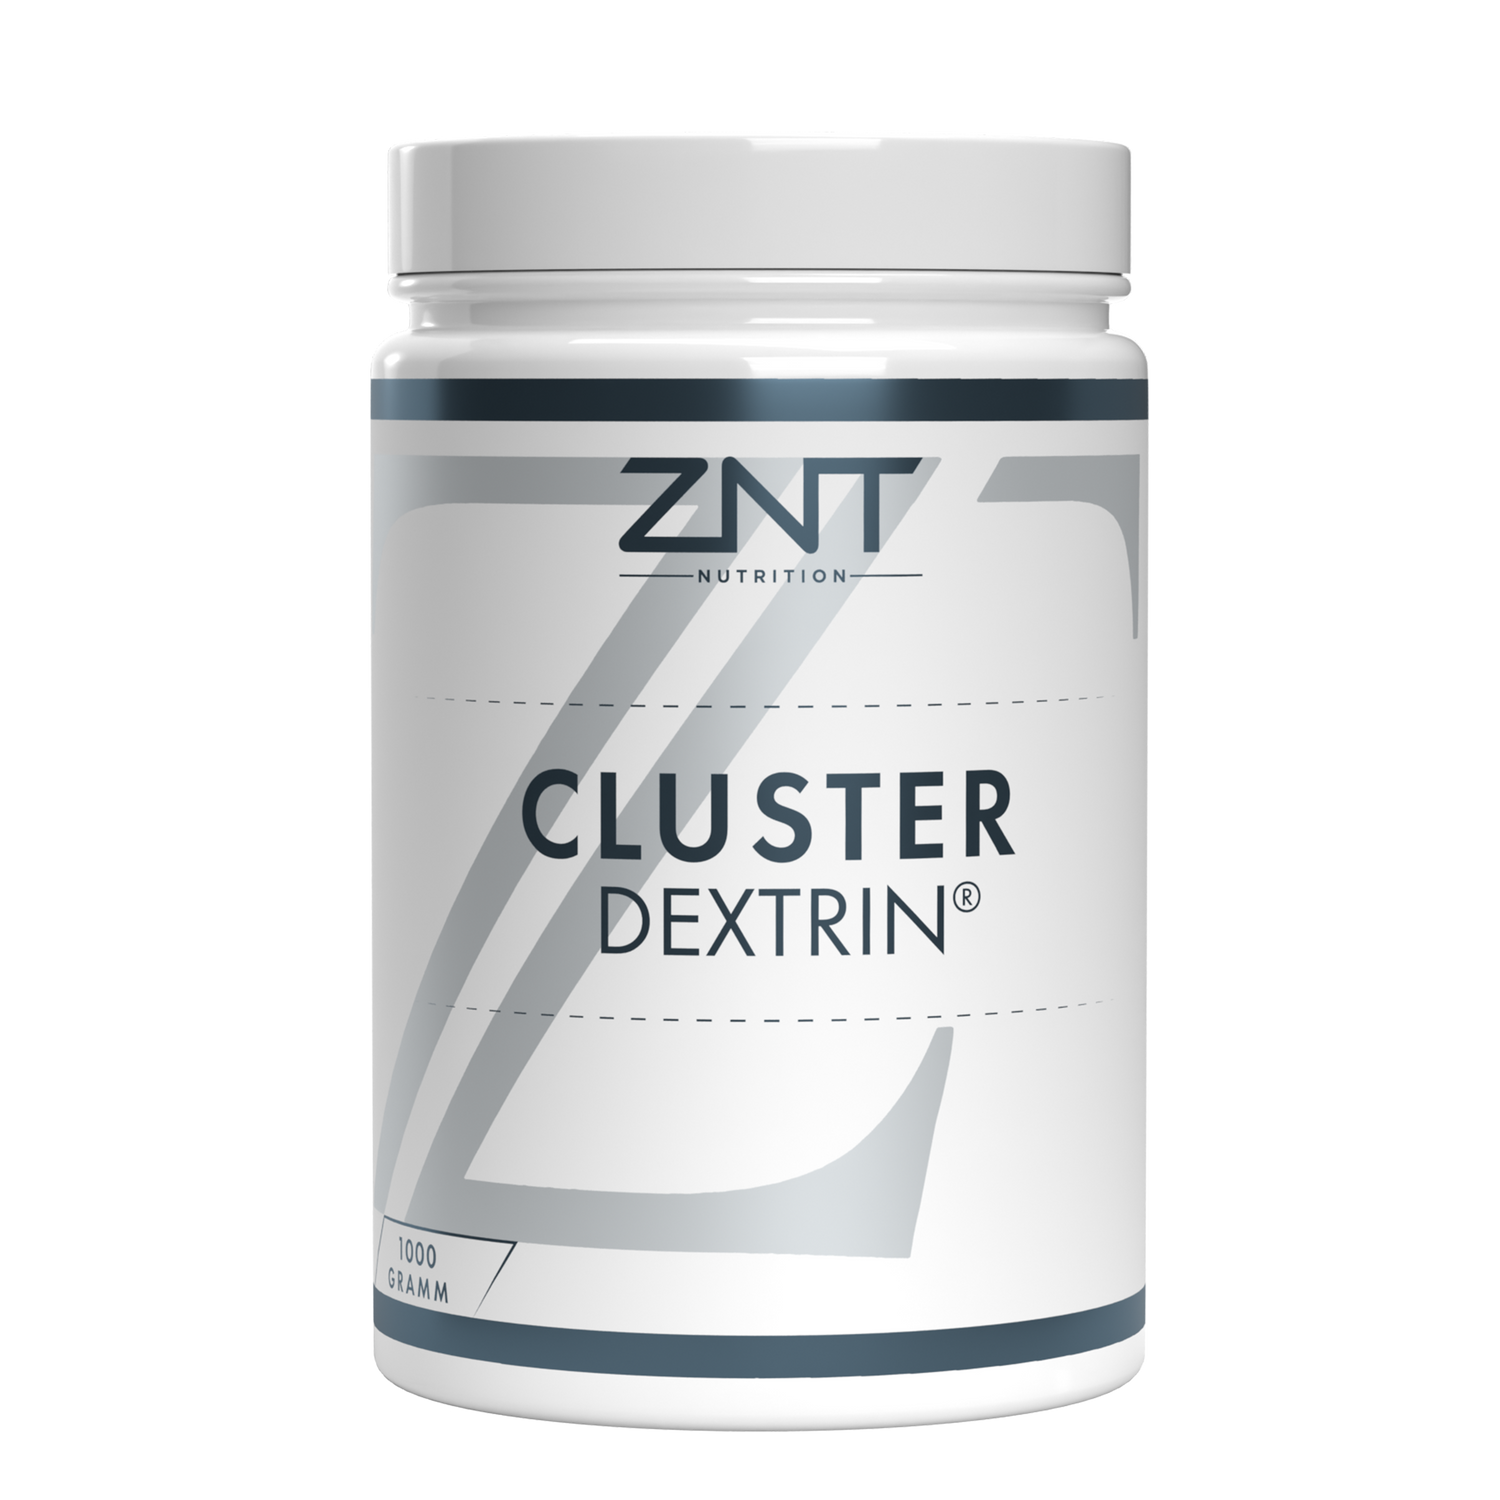 Cluster Dextrin® - ZNT Nutrition